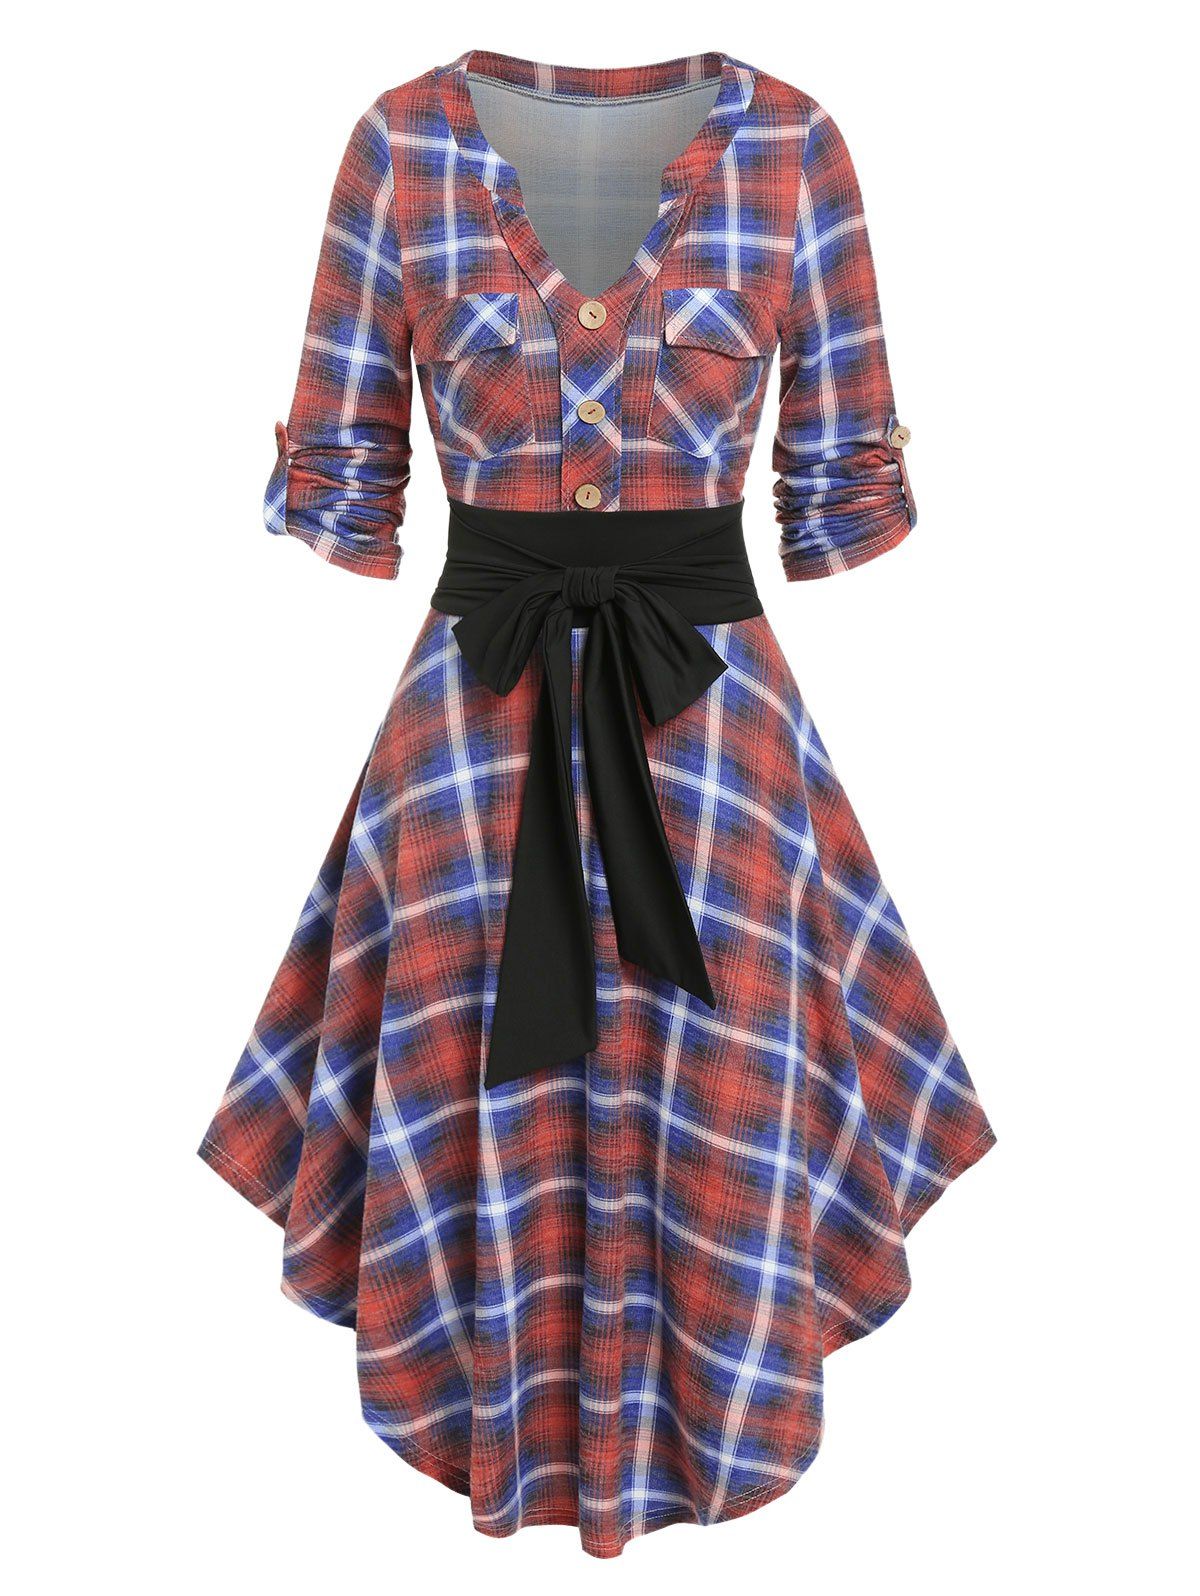 Vintage Plaid Asymmetrical Bowknot Roll Up Sleeve Pocket Shirt Dress - ORANGE XXXL